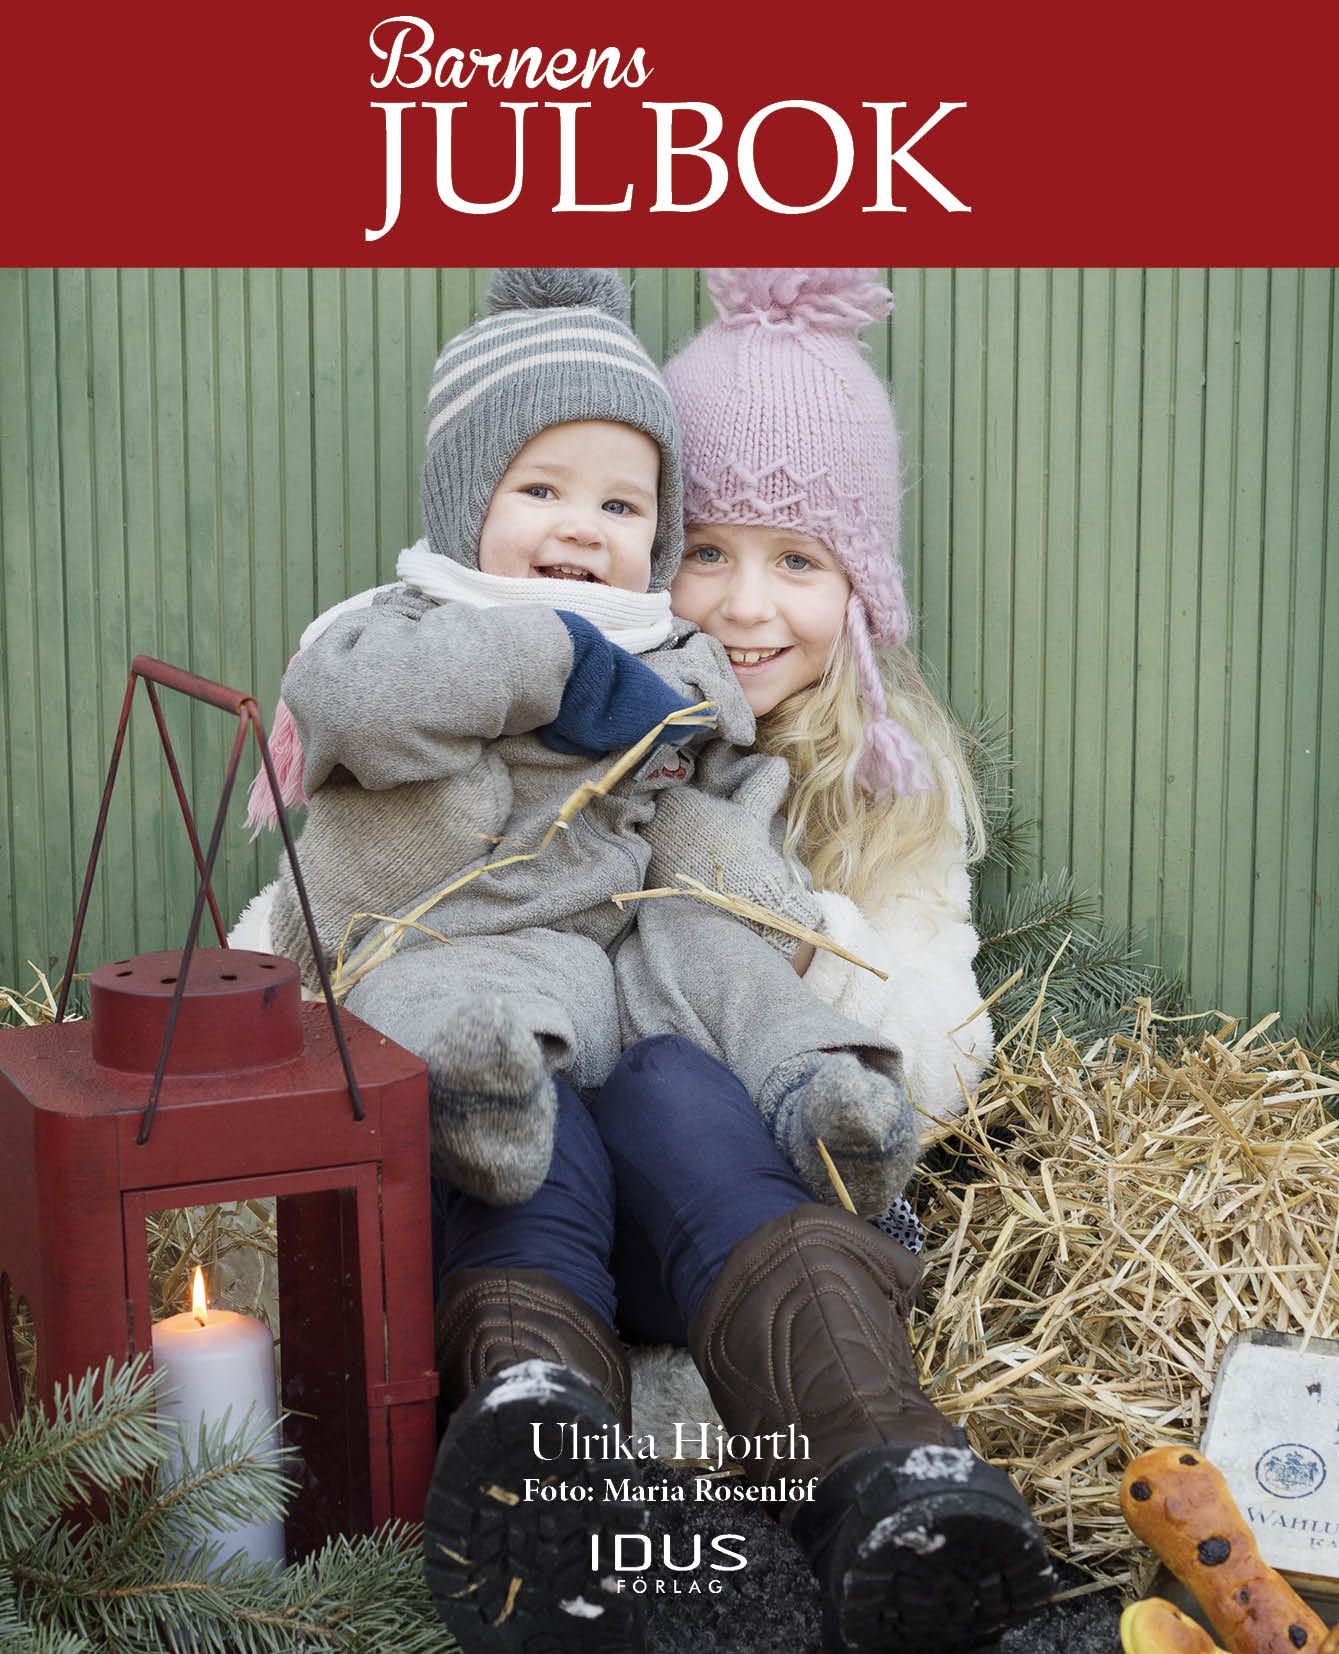 Barnens julbok, e-bog af Ulrika Hjorth